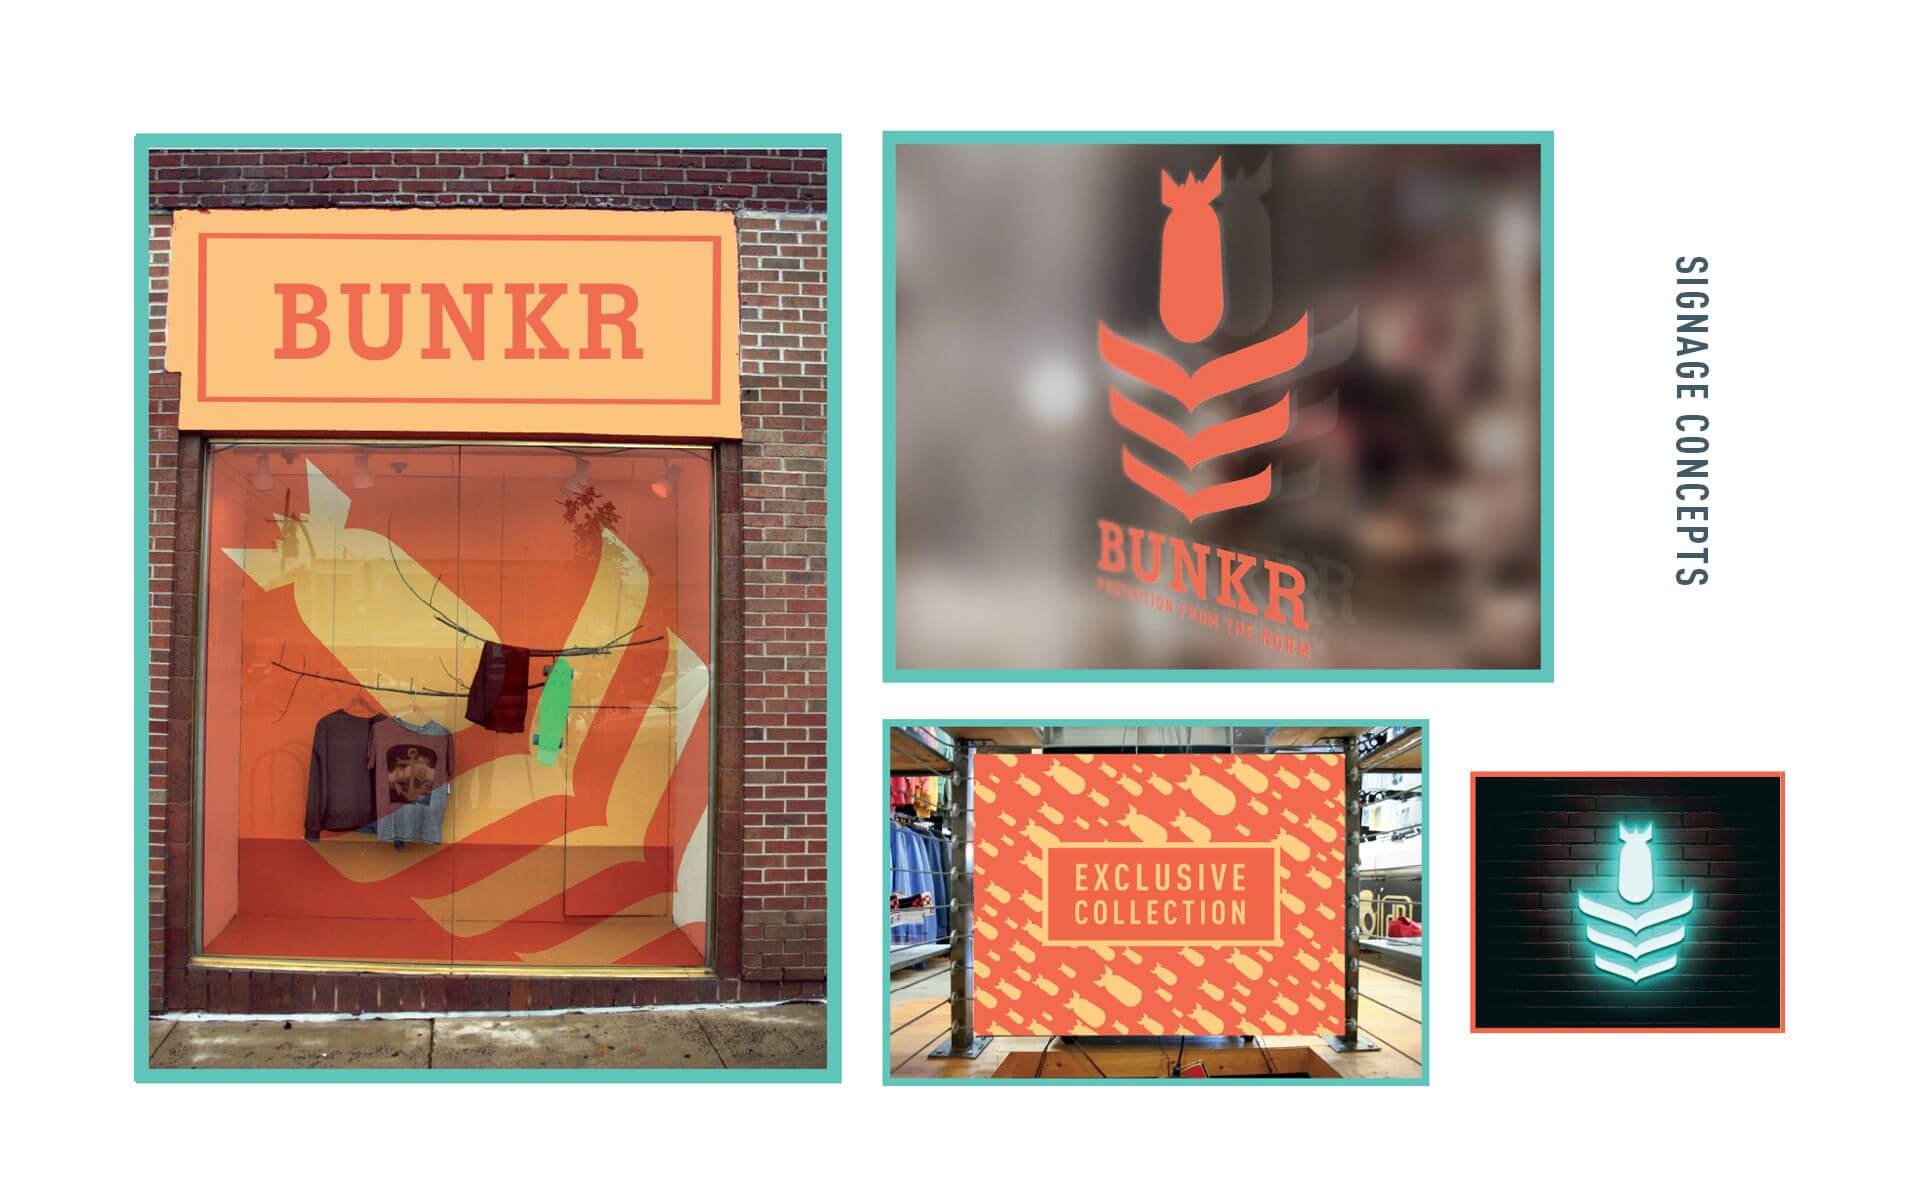 bunkr-signage